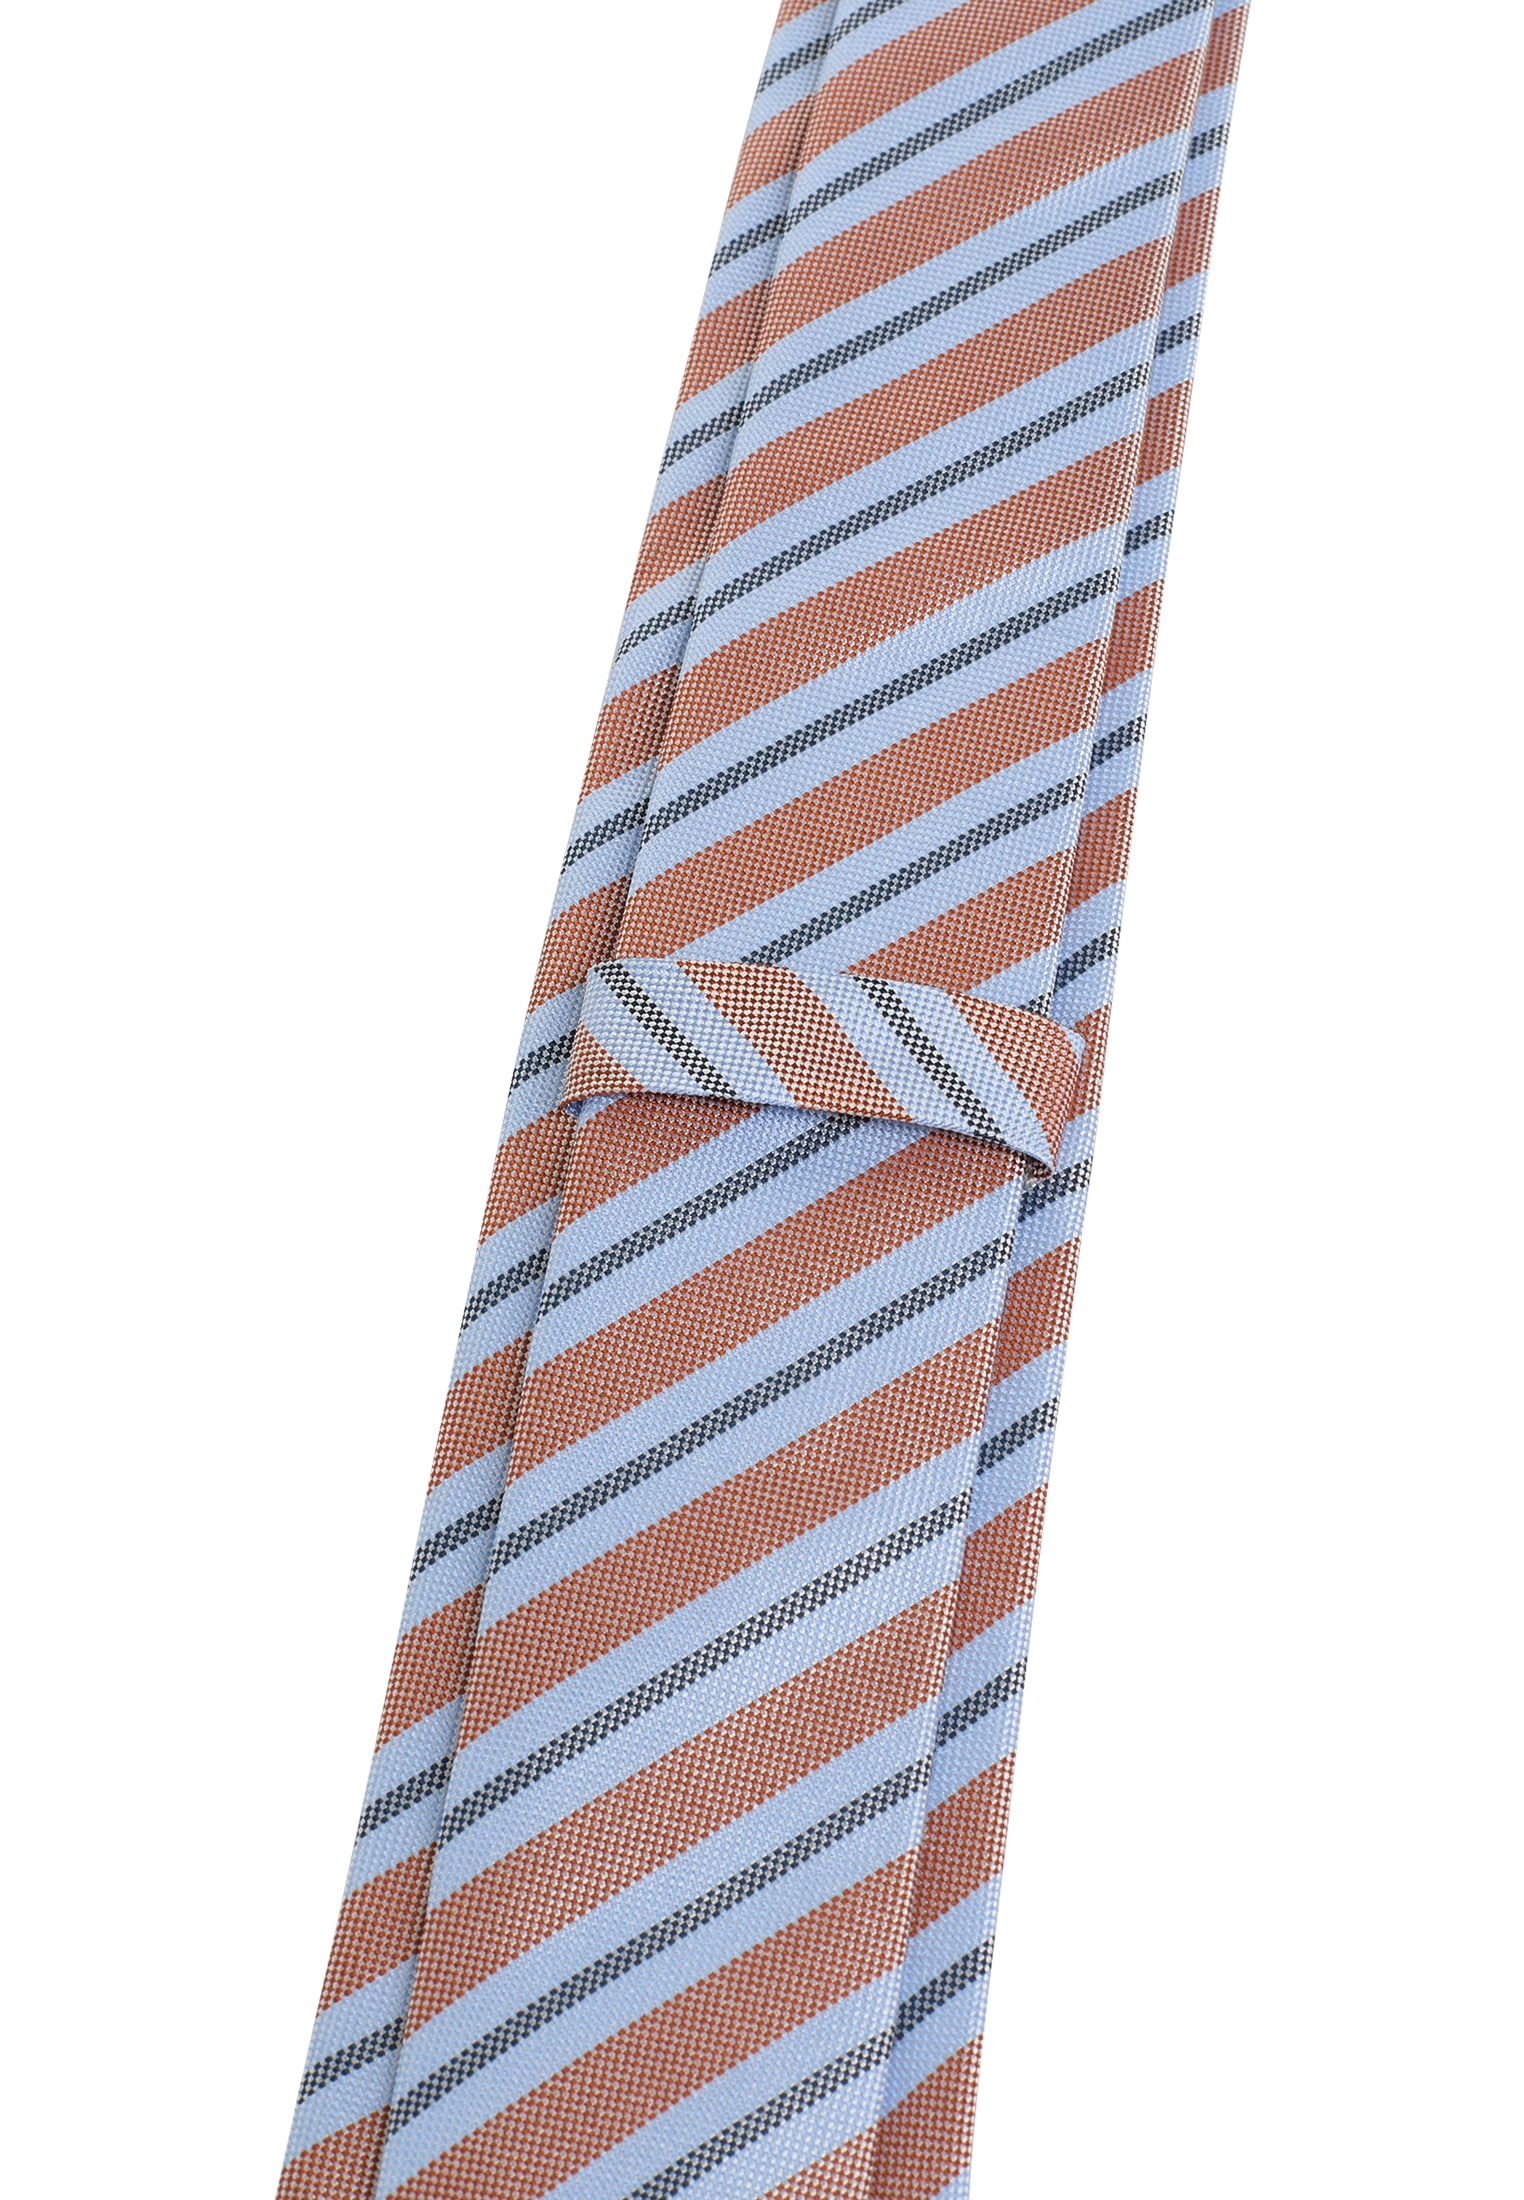 Krawatten online kaufen und bei mehr Ackermann Krawatte jetzt 